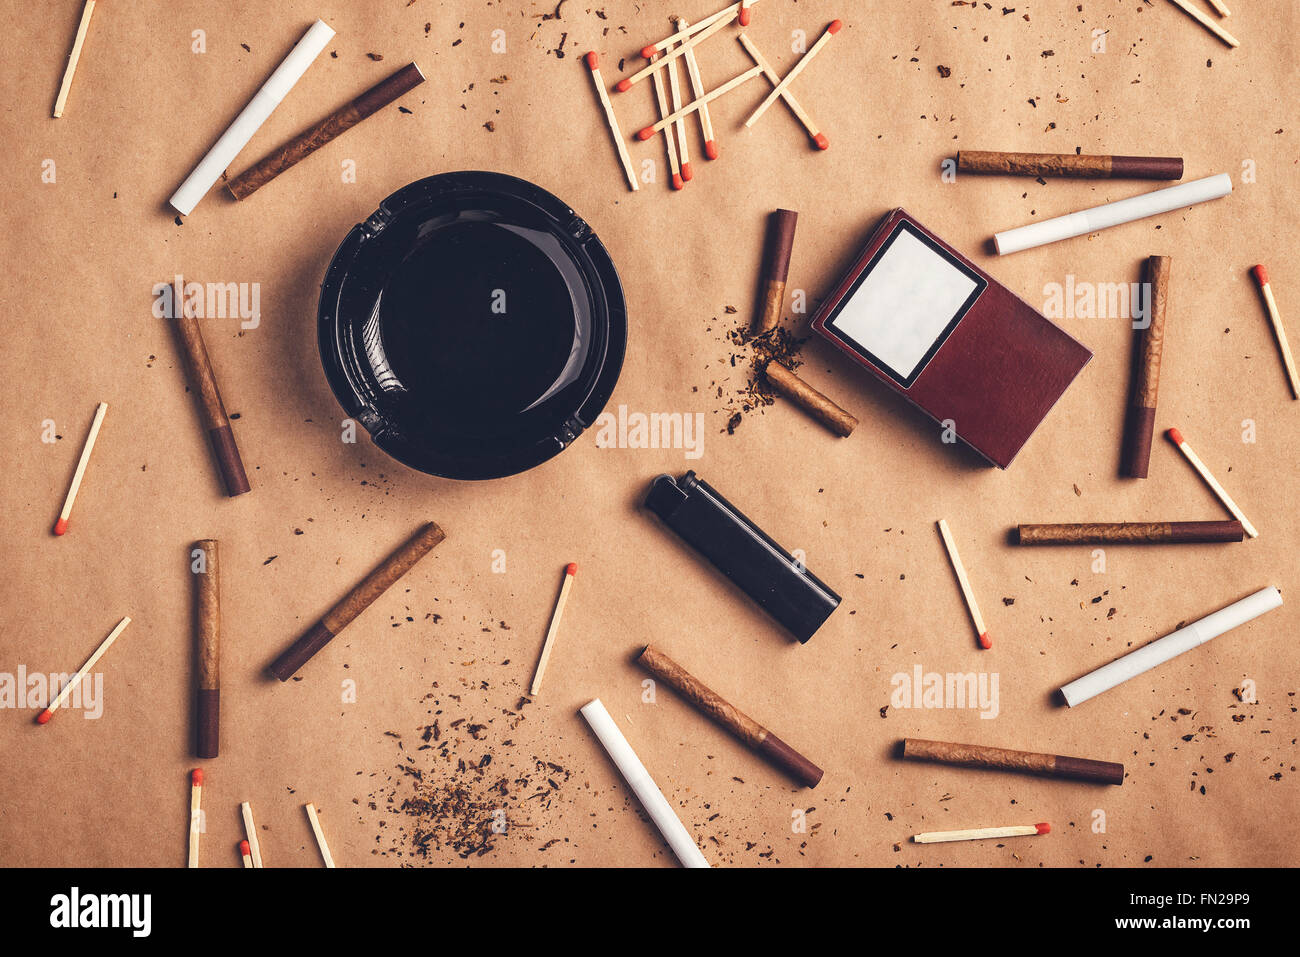 Leidenschaftliche Raucher flach legen Draufsicht Tischgesteck, warme Retro-getönten Bild der Aschenbecher, Zigaretten, Streichhölzer und Feuerzeug Stockfoto